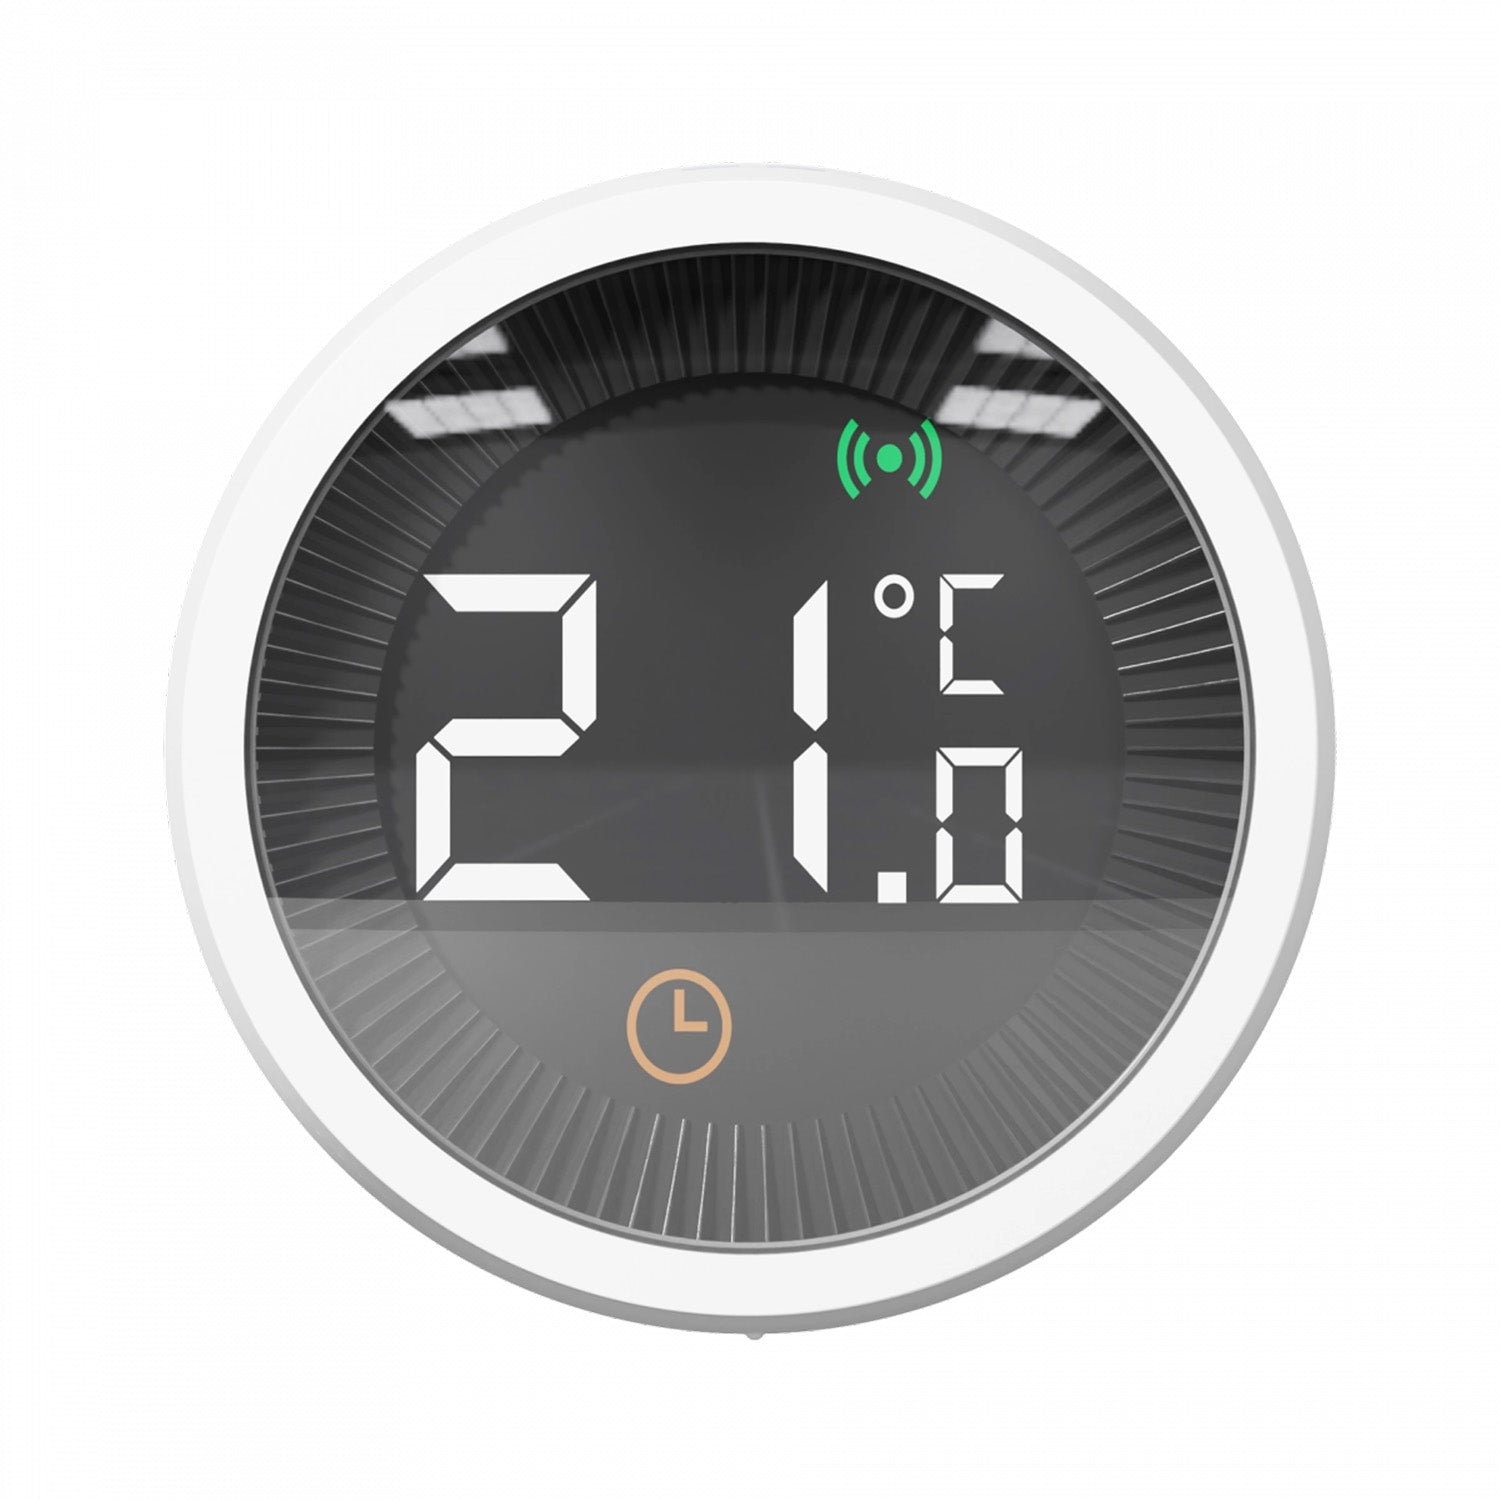 TESLA Smart Home Smart Thermostatic Valve Style Zigbee